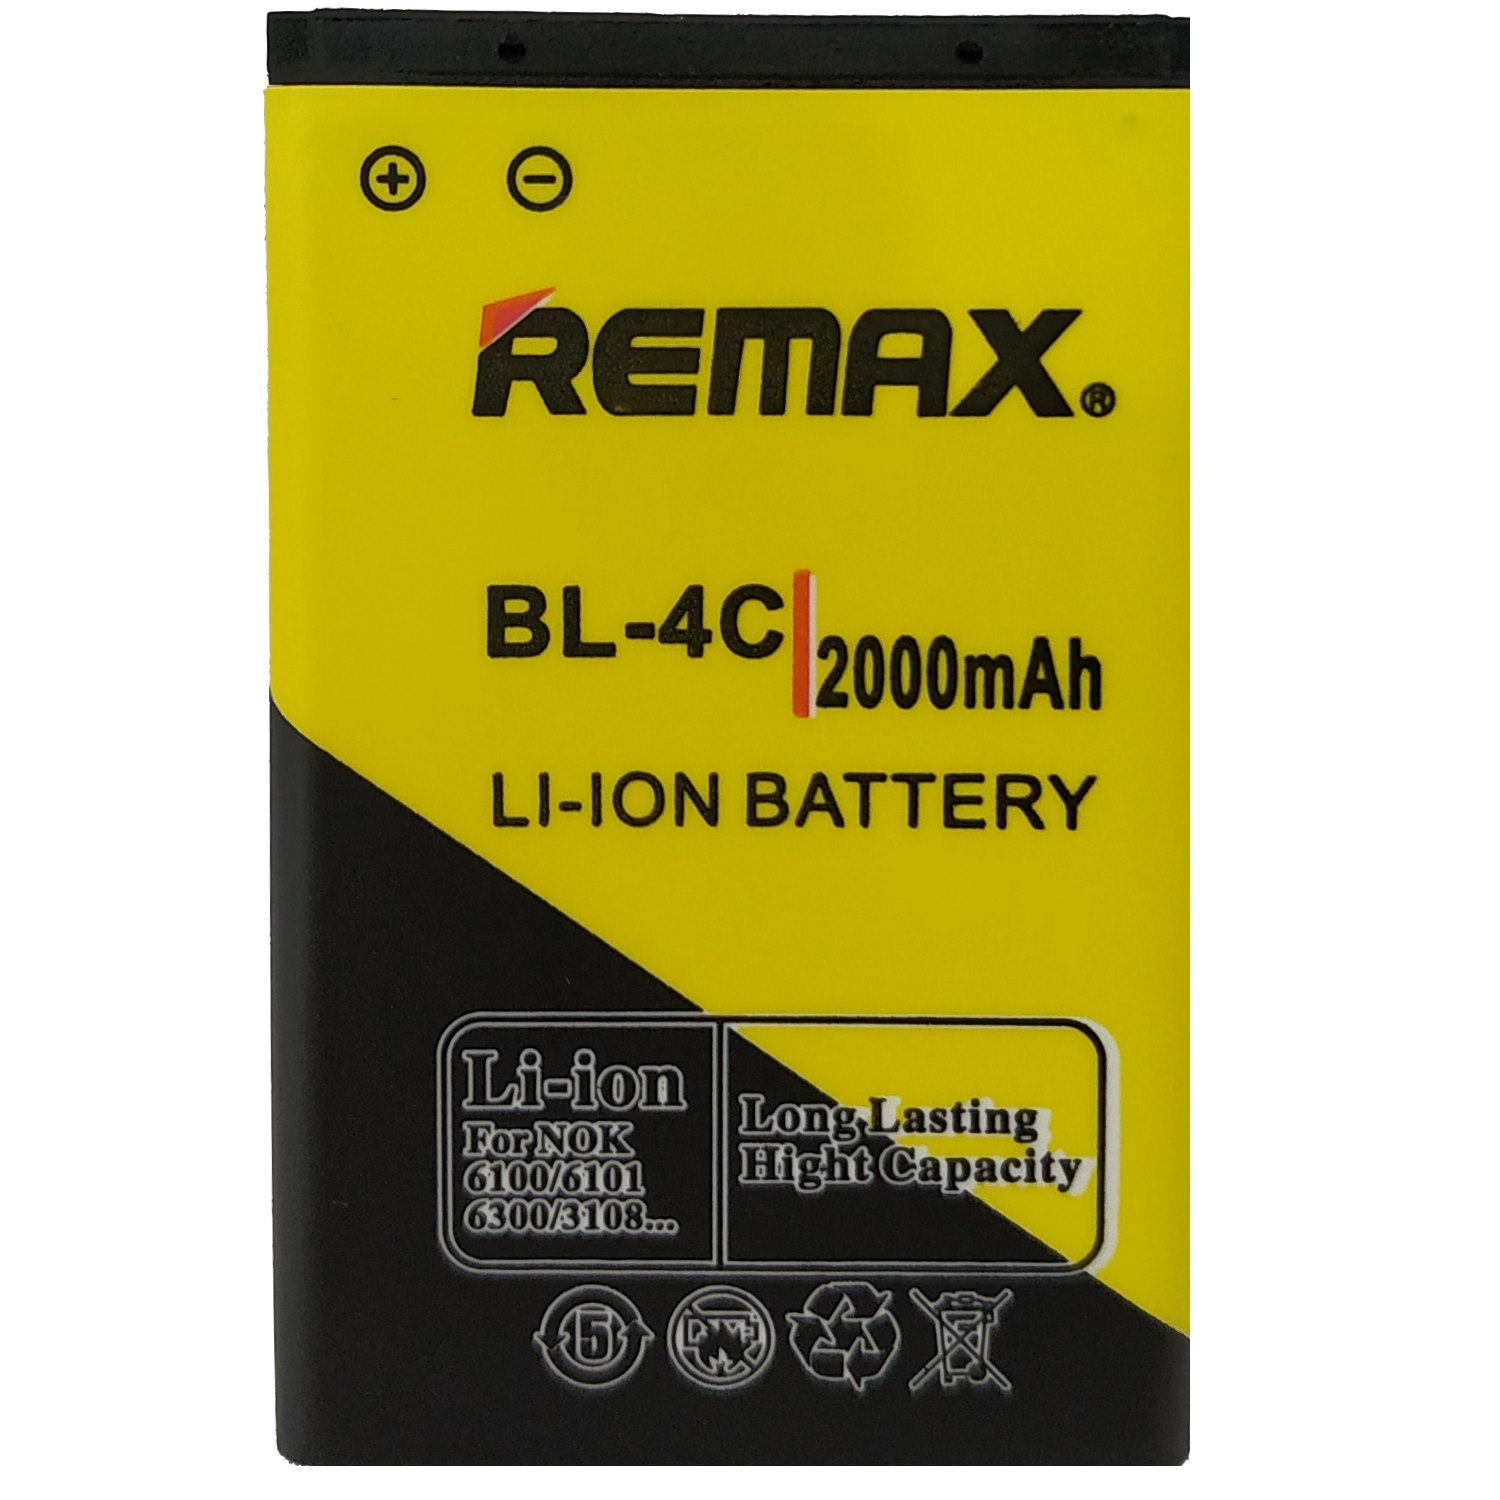 باتری موبایل ریمکس مدل BL-4C ظرفیت 2000 میلی آمپر ساعت مناسب برای گوشی موبایل نوکیا 4C